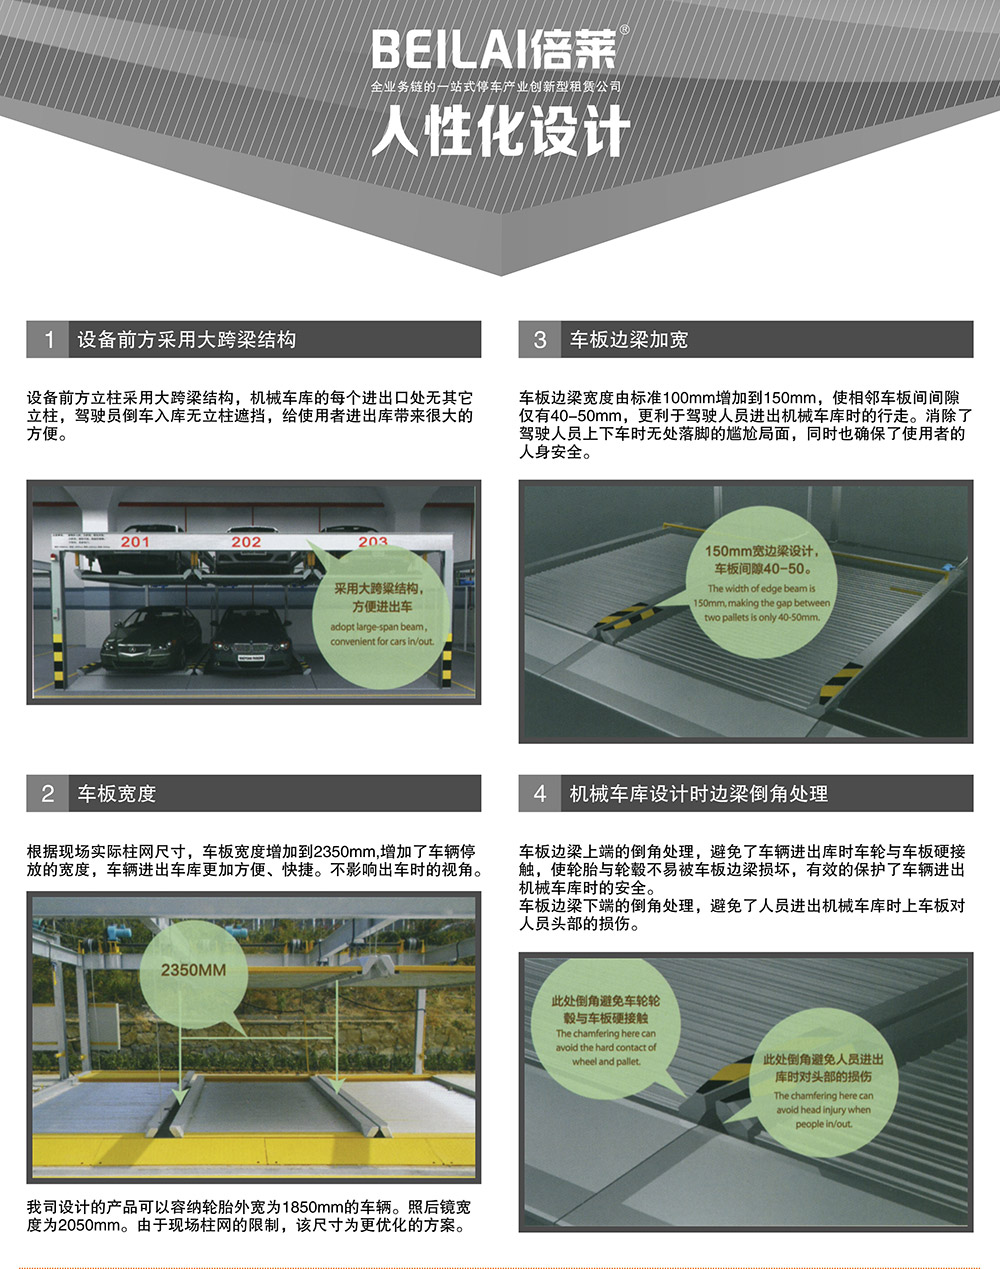 四川成都重列PSH2二层升降横移立体停车设备人性化设计.jpg